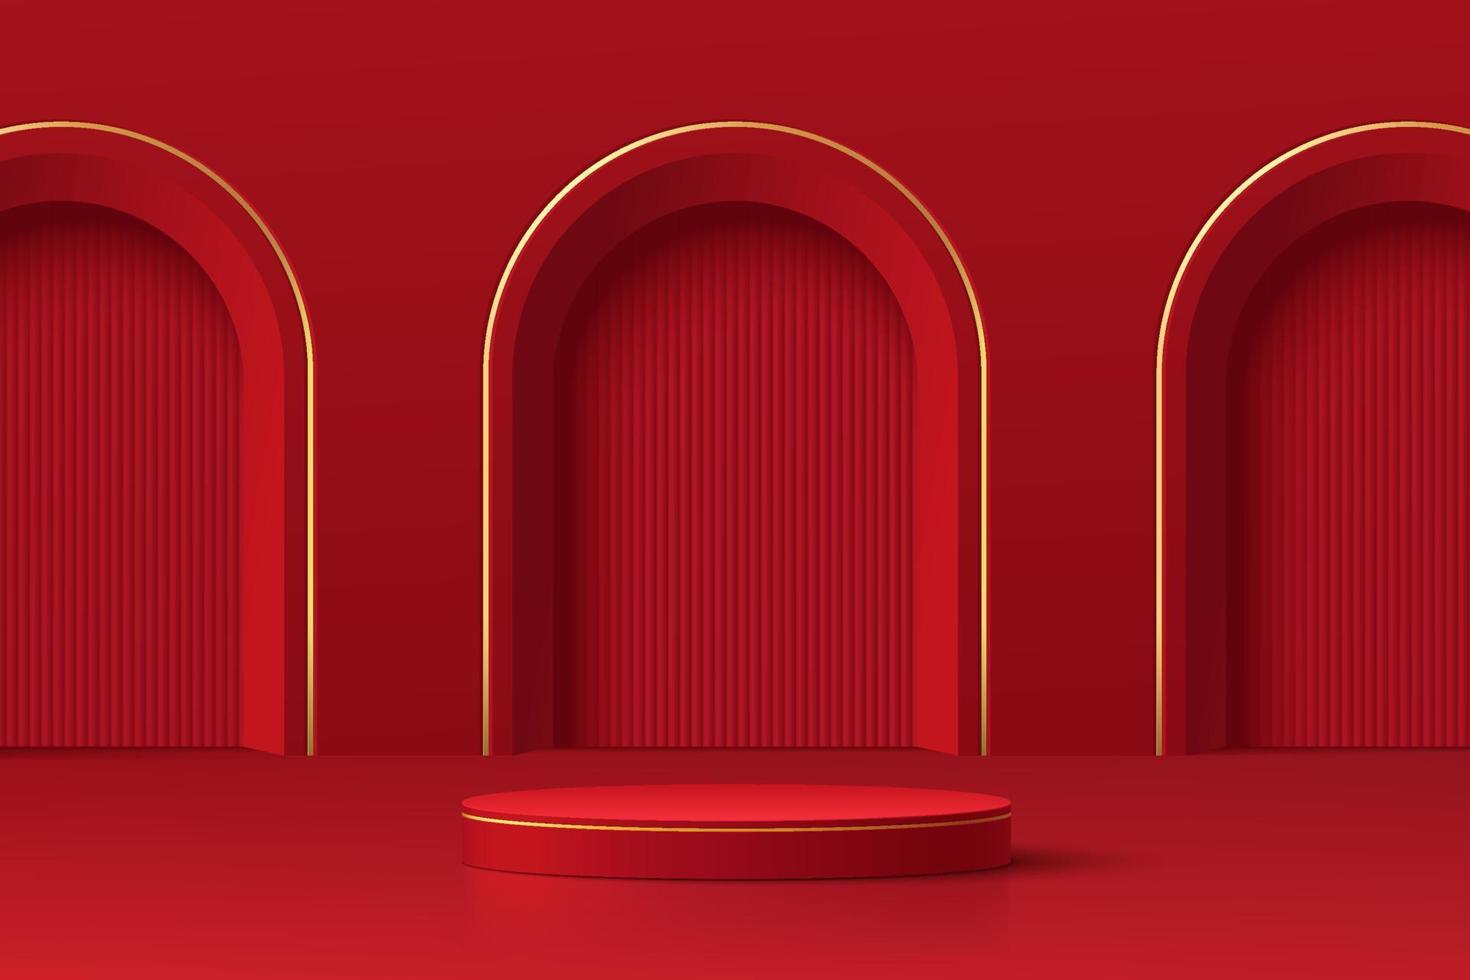 podium de piédestal de cylindre 3d rouge foncé et or réaliste avec texture verticale dans la porte en arc. scène minimale pour la vitrine des produits, l'affichage de la promotion. plate-forme de salle de studio abstraite. bonne fête des lanternes. vecteur